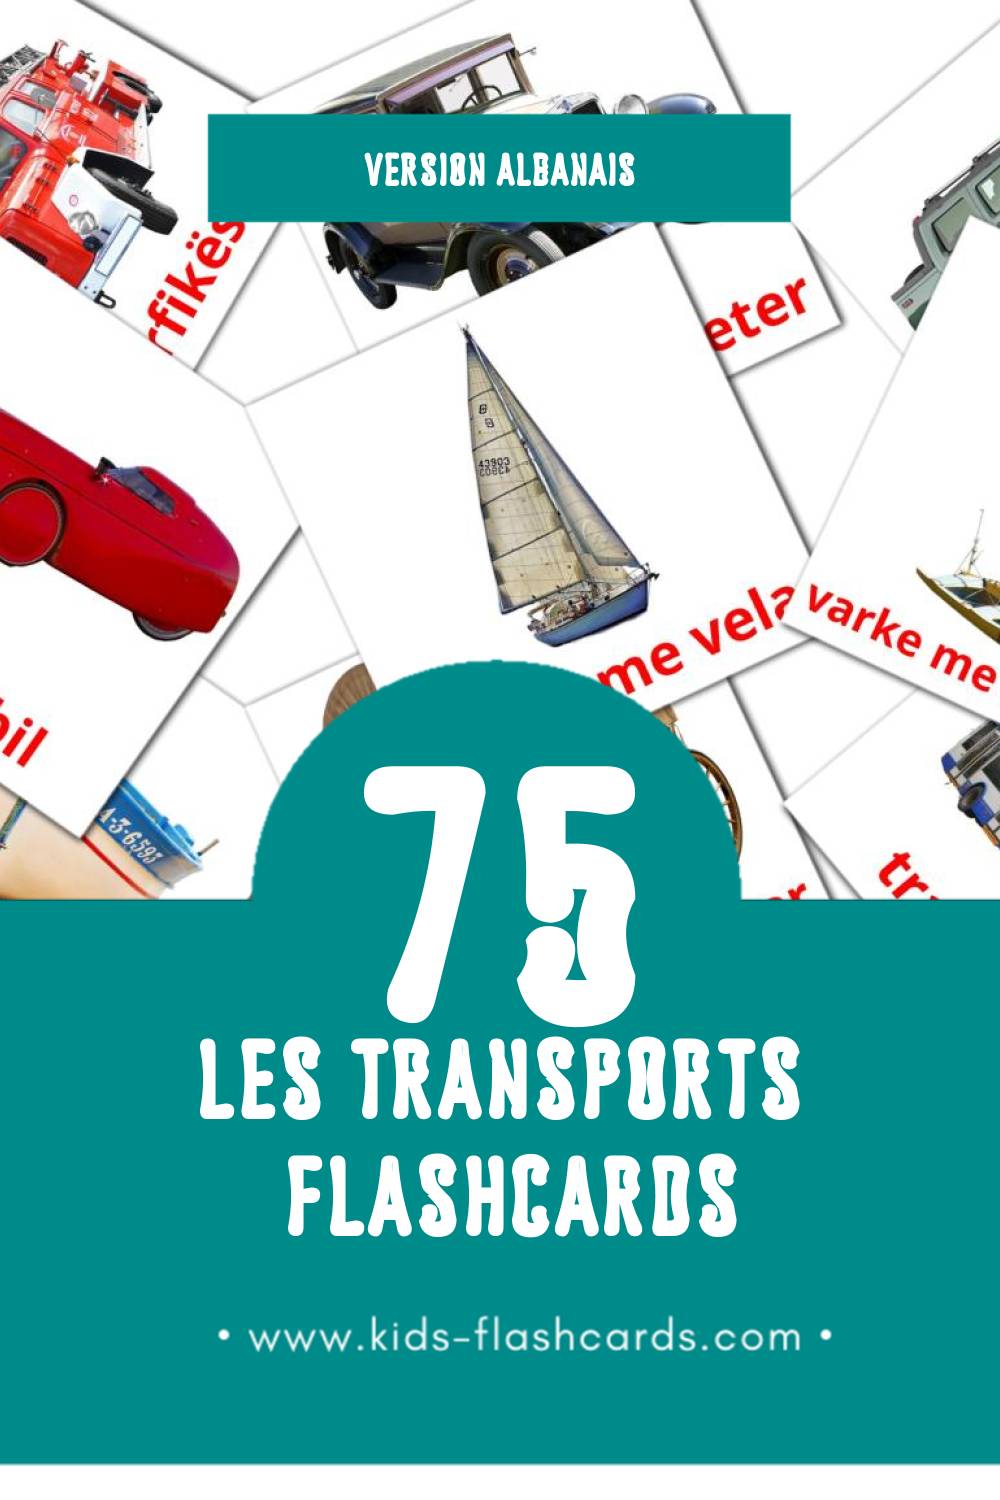 Flashcards Visual Transporti pour les tout-petits (75 cartes en Albanais)